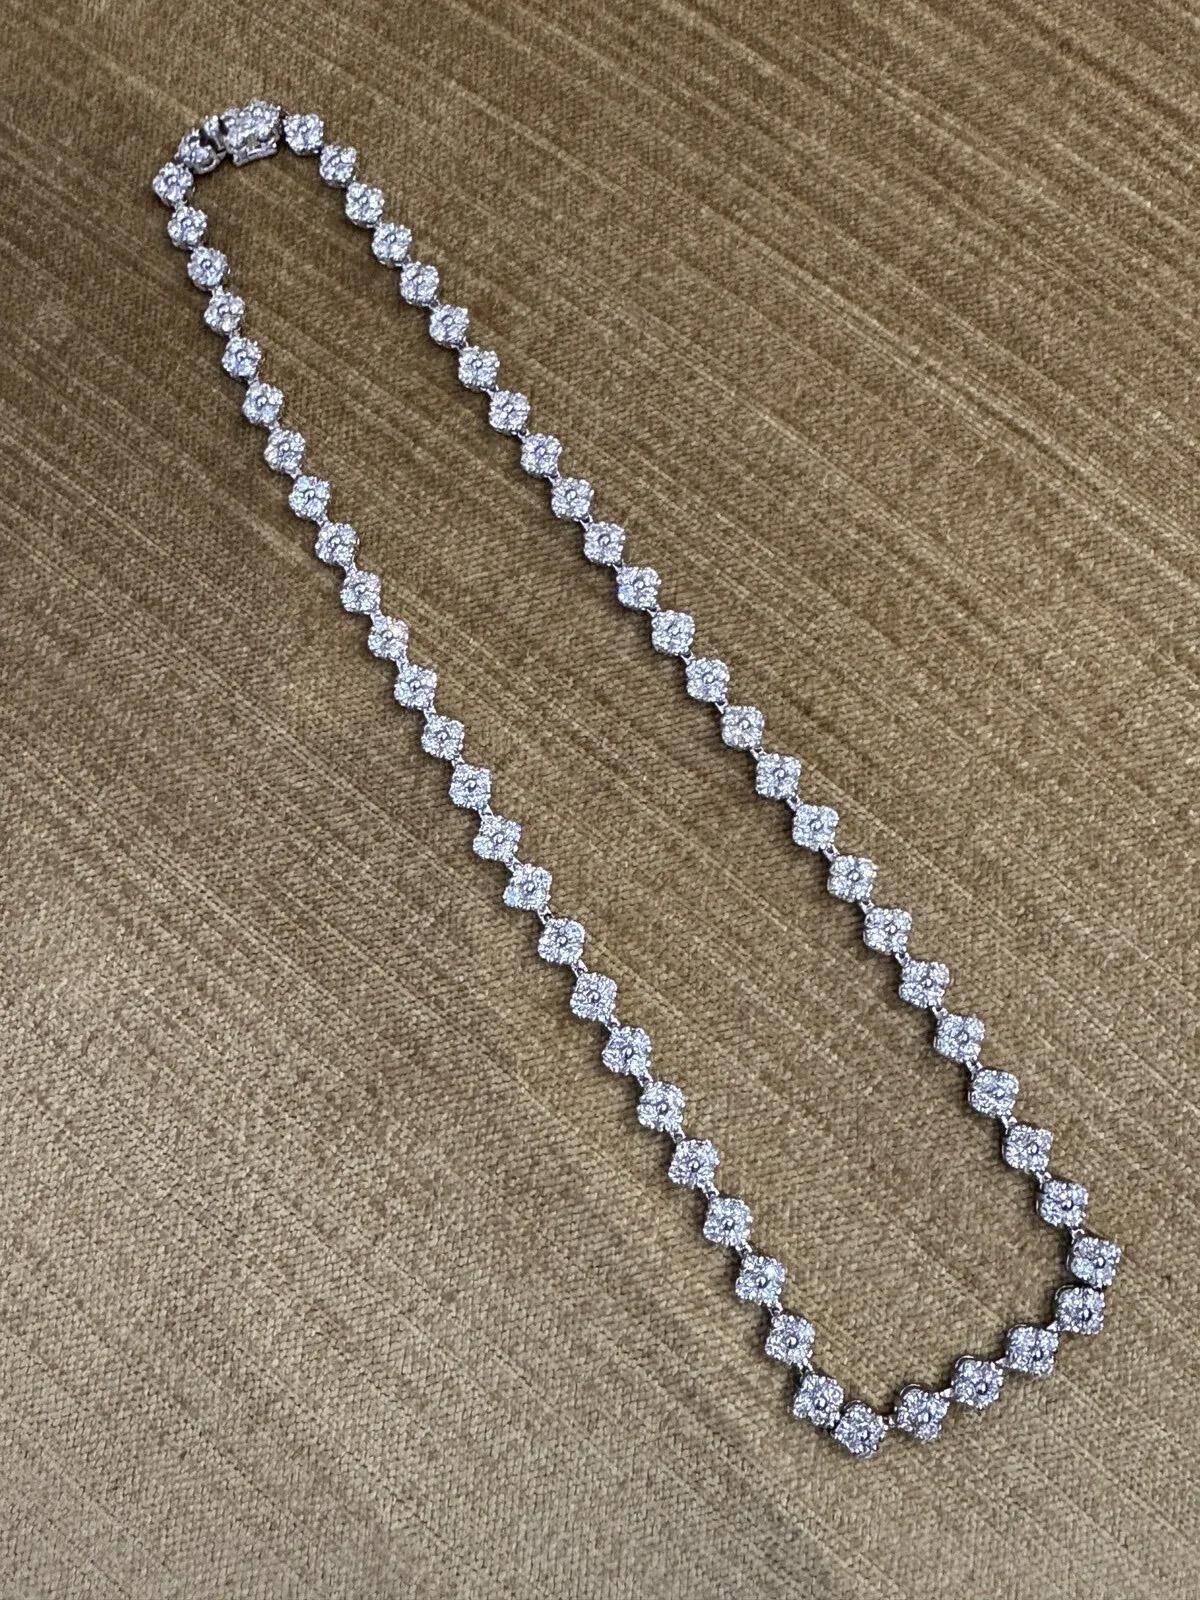 Floret Cluster Diamant Choker Halskette 10,34 Karat Gesamtgewicht in Platin

Diamanten-Cluster-Halskette mit Clustern aus 4 runden Brillanten, die in einer einzigen Reihe in Platin gefasst sind.

Das Gesamtgewicht der Diamanten beträgt 10,34